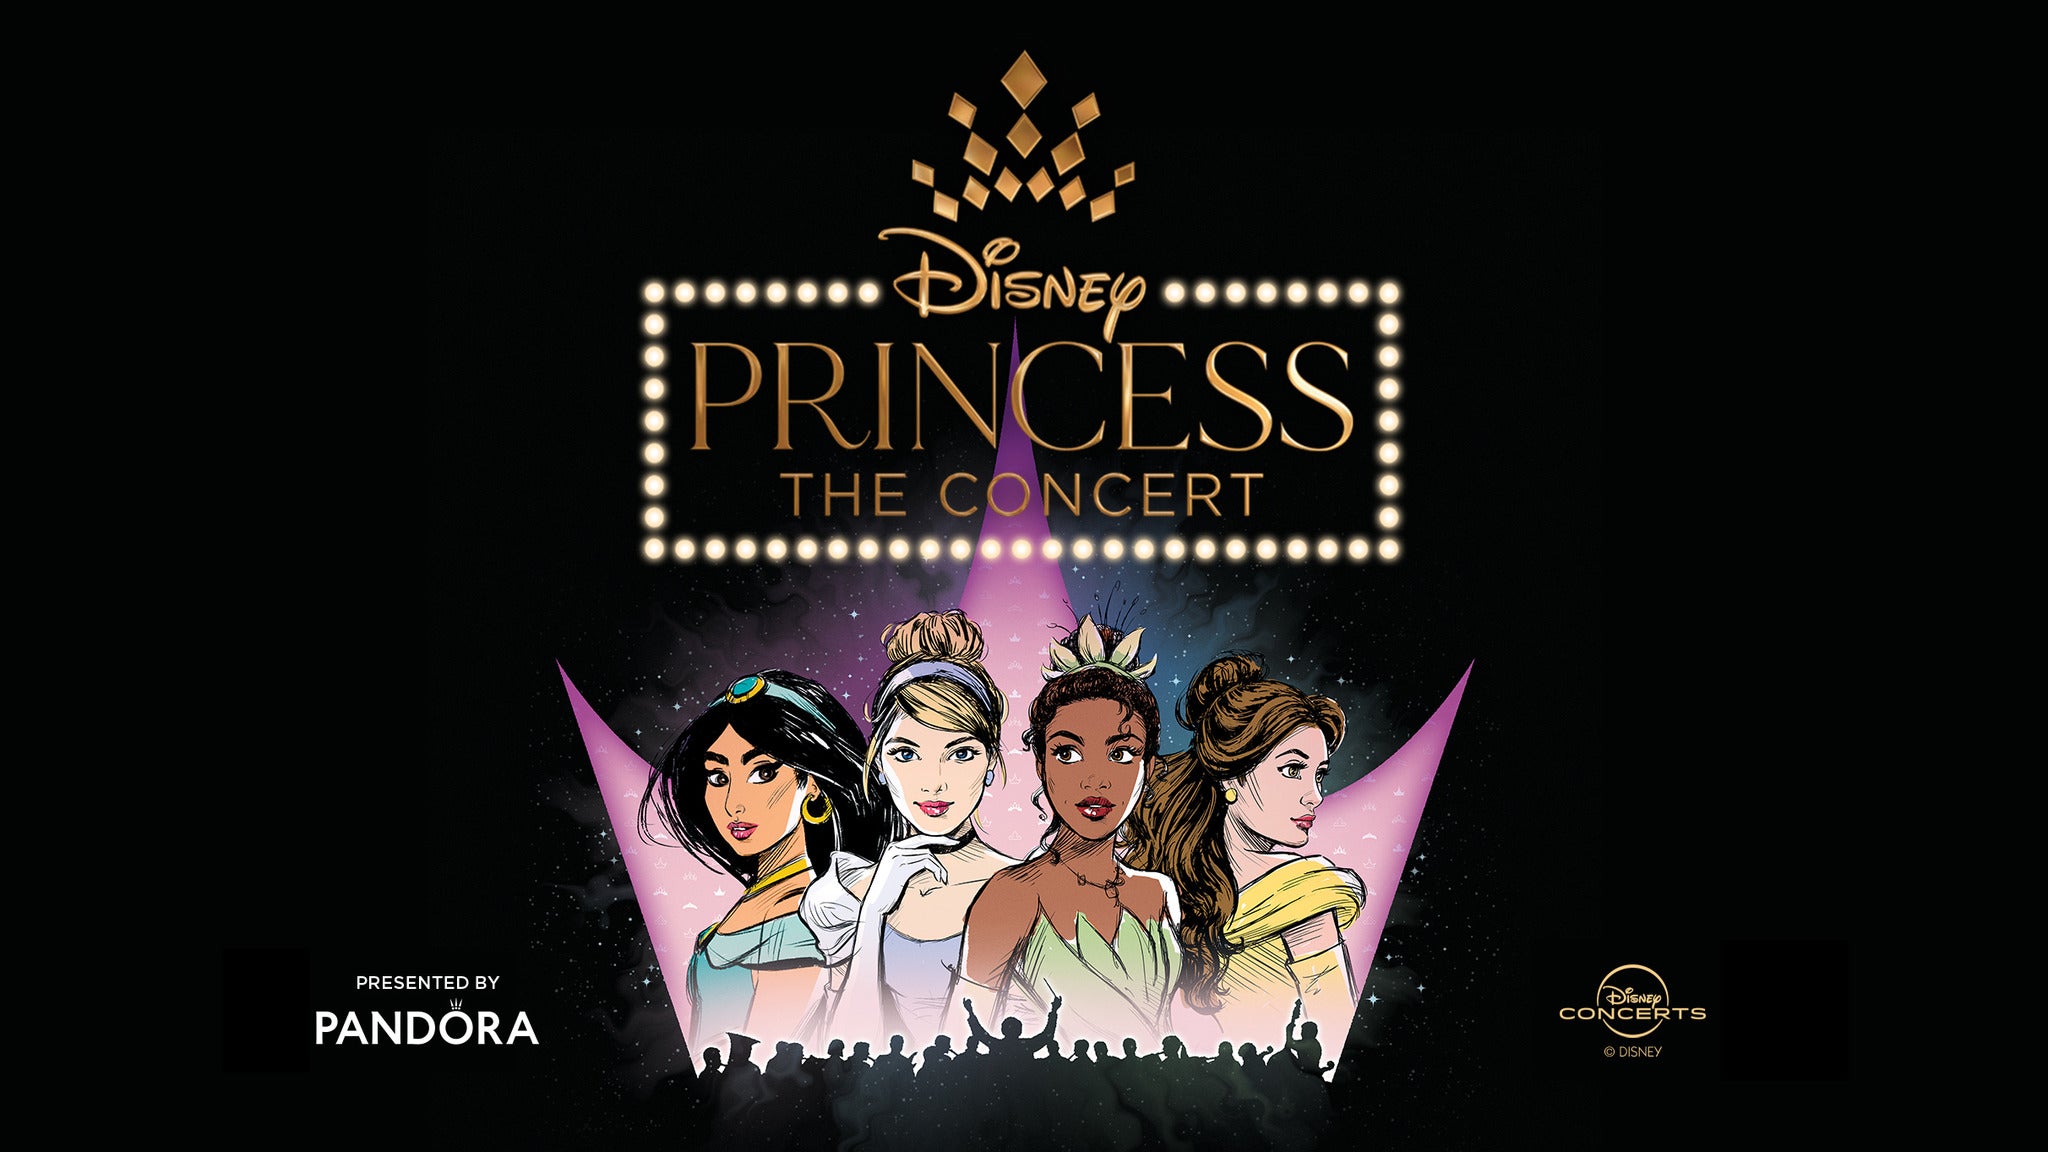 Disney Princess: The Concert - Sarasota, FL 34236